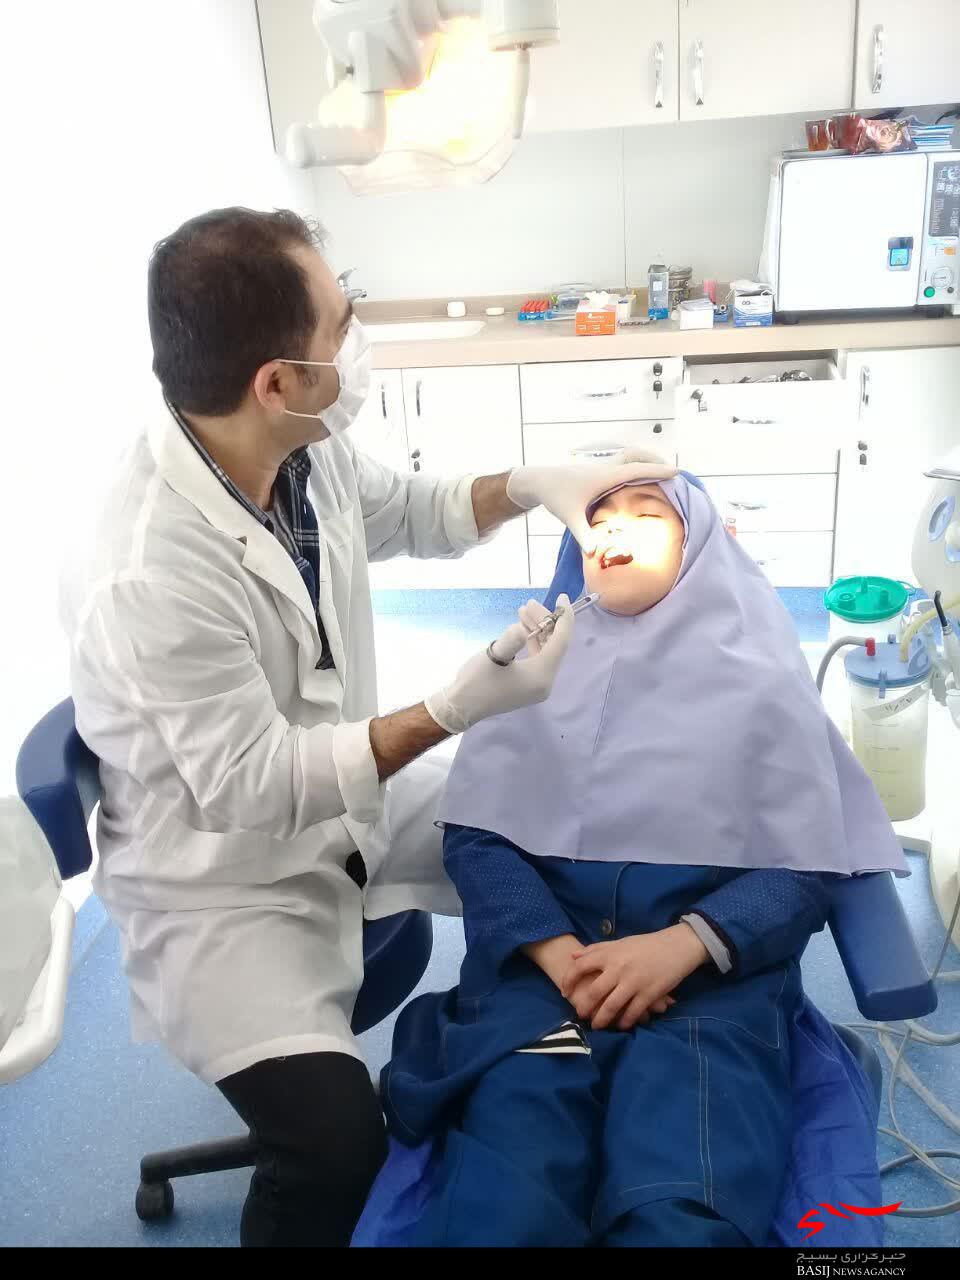 ارائه خدمات رایگان دندانپزشکی در منطقه مهرشهر کرج